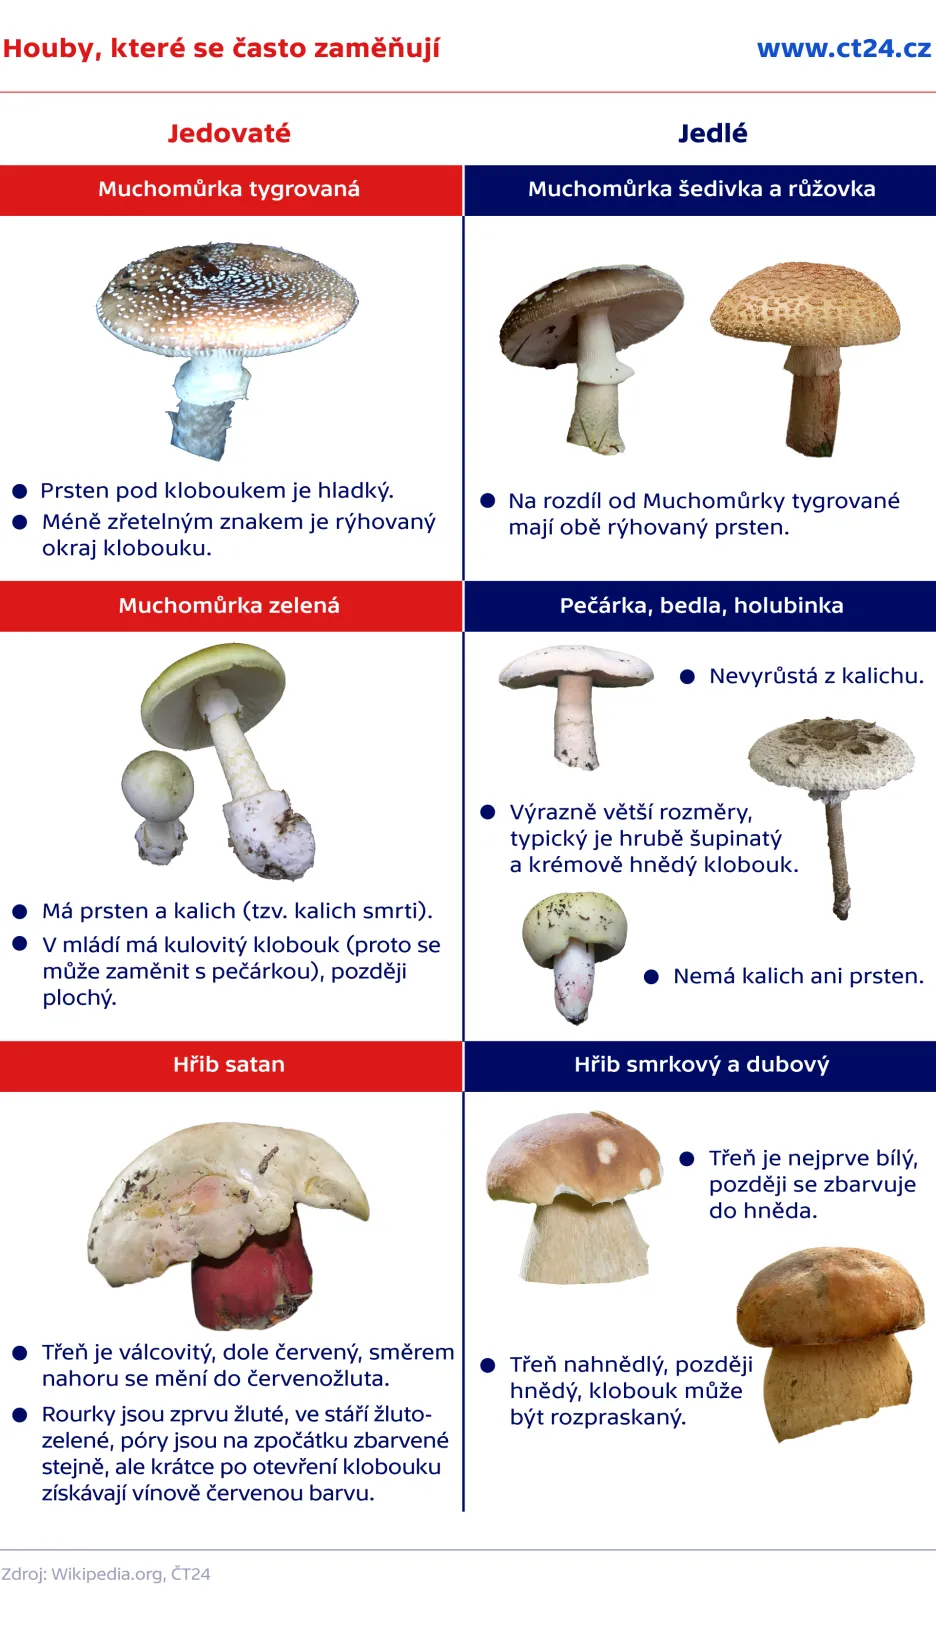 Jaké jsou nejedlé houby?